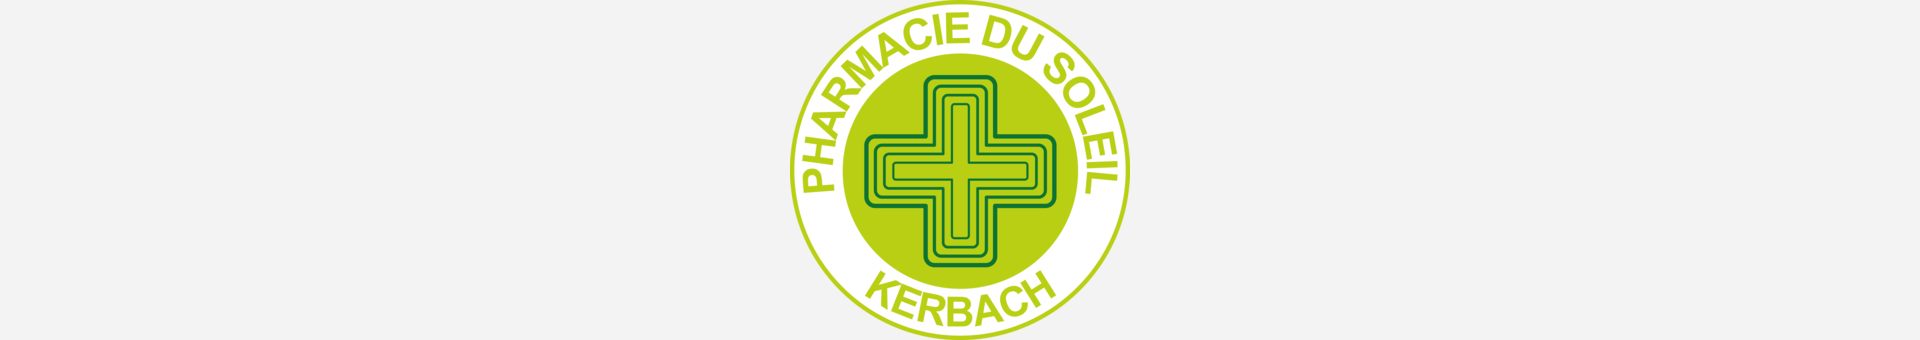 Pharmacie du Soleil,Kerbach